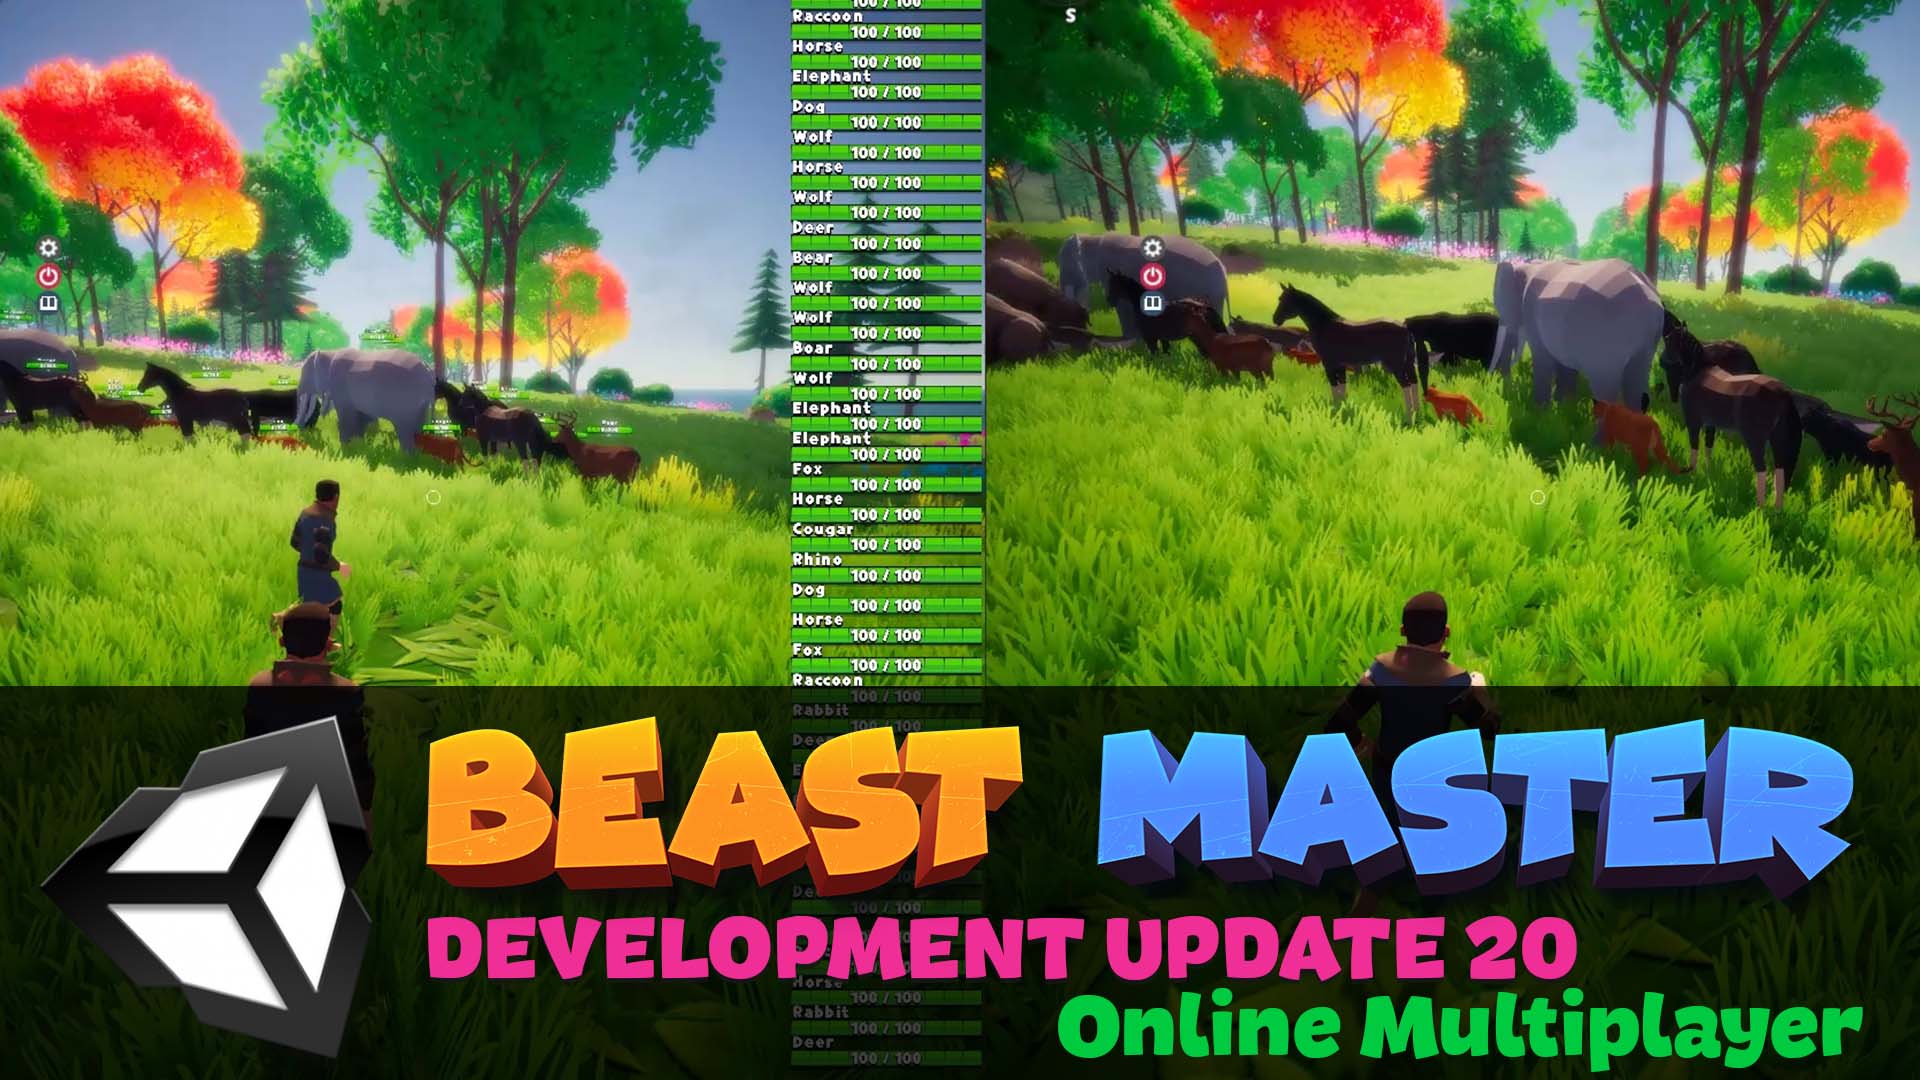 beast-master-development-update-20-multiplayer-news-indie-db